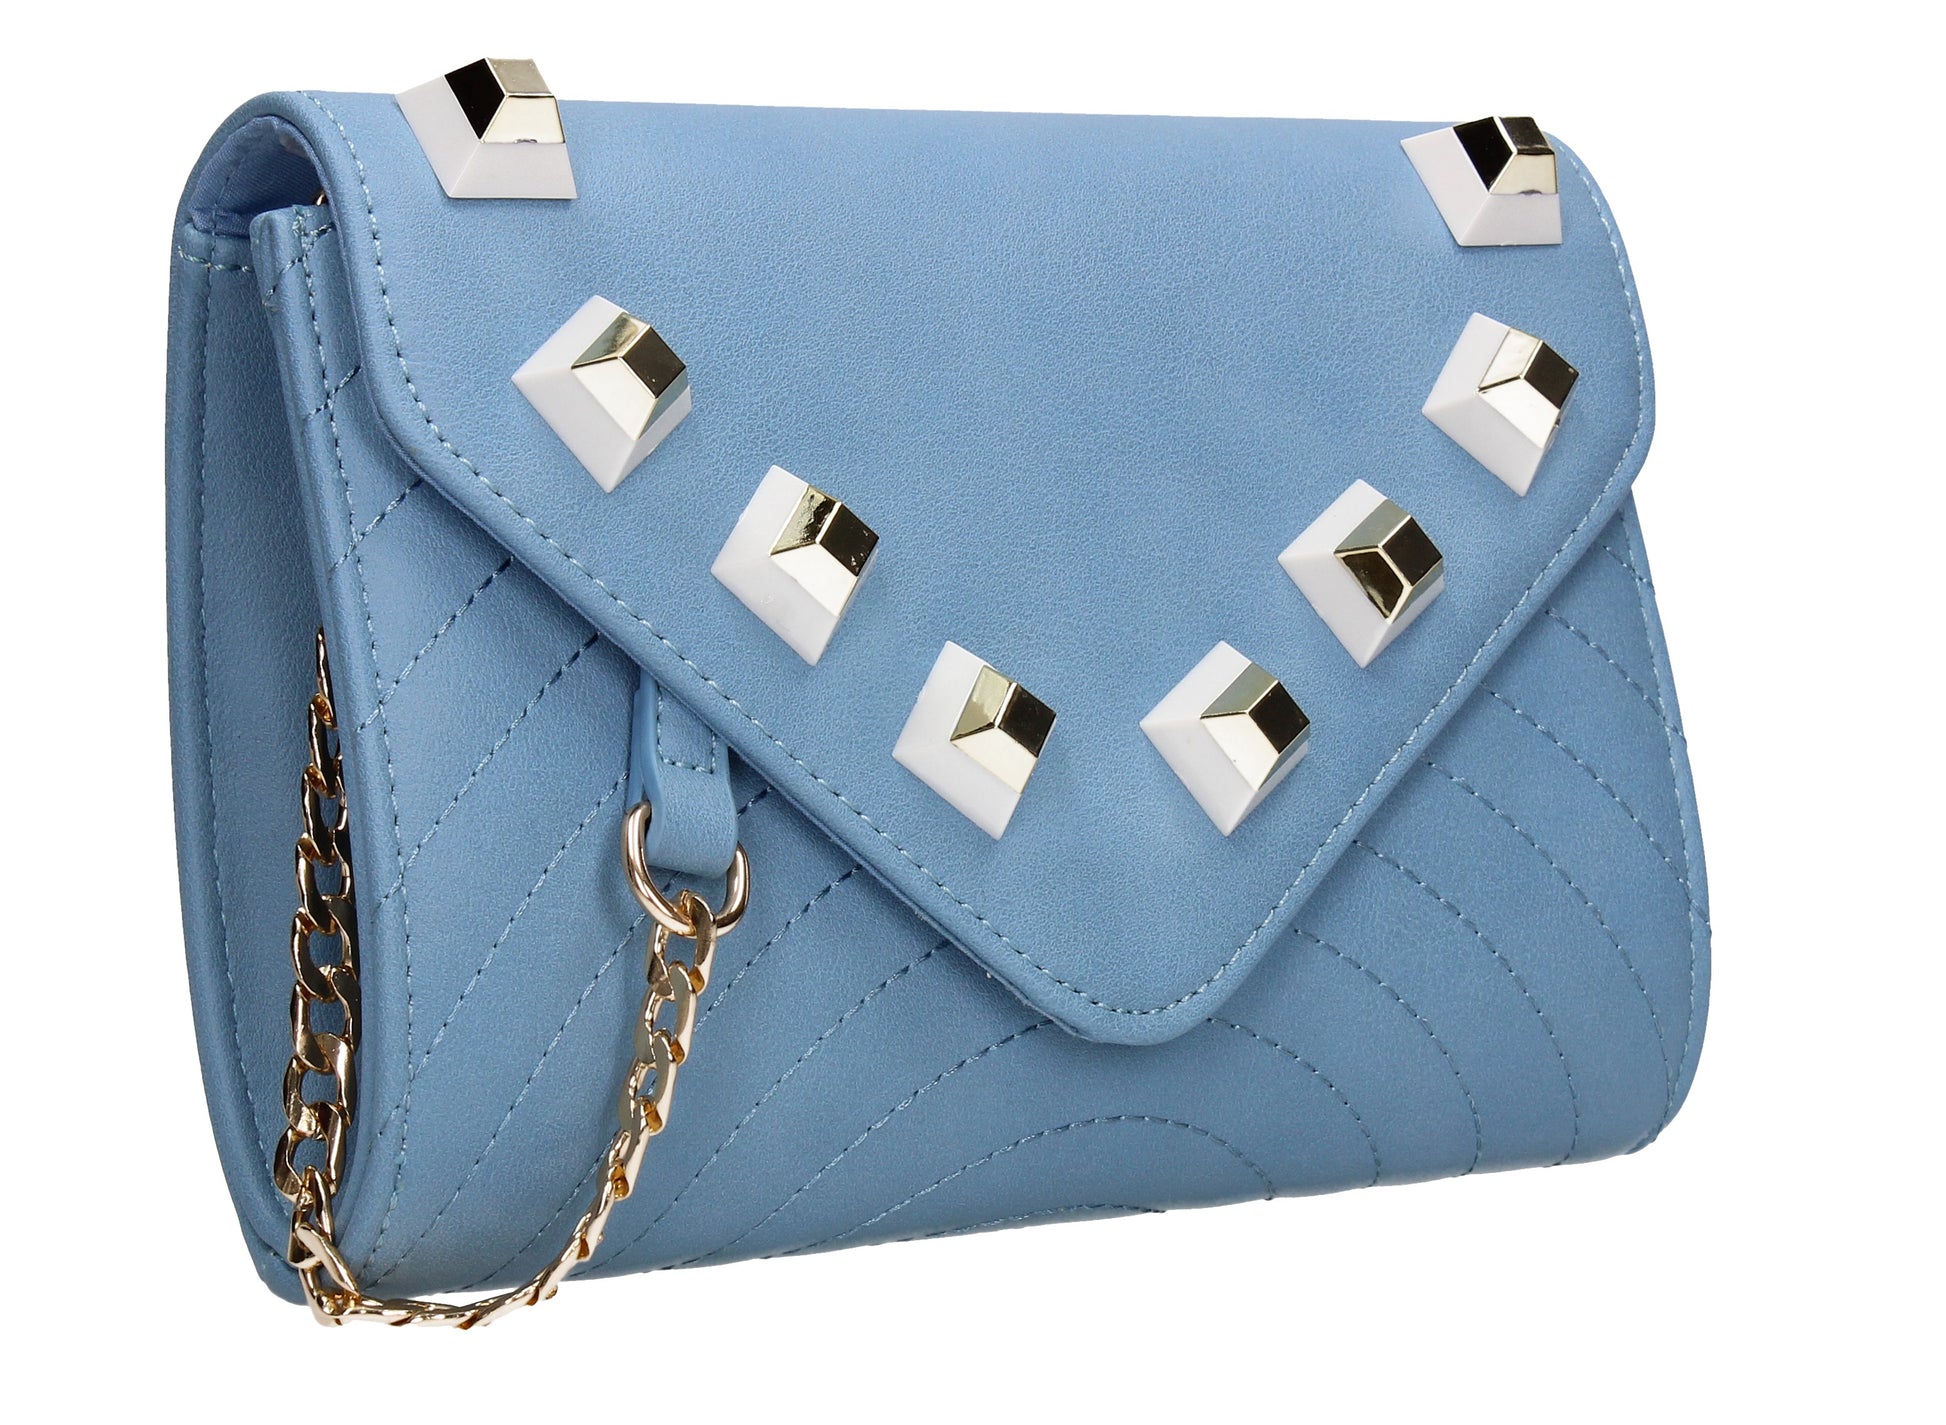 SWANKYSWANS Serafina Stud Clutch Bag Blue Cute Cheap Clutch Bag For Weddings School and Work